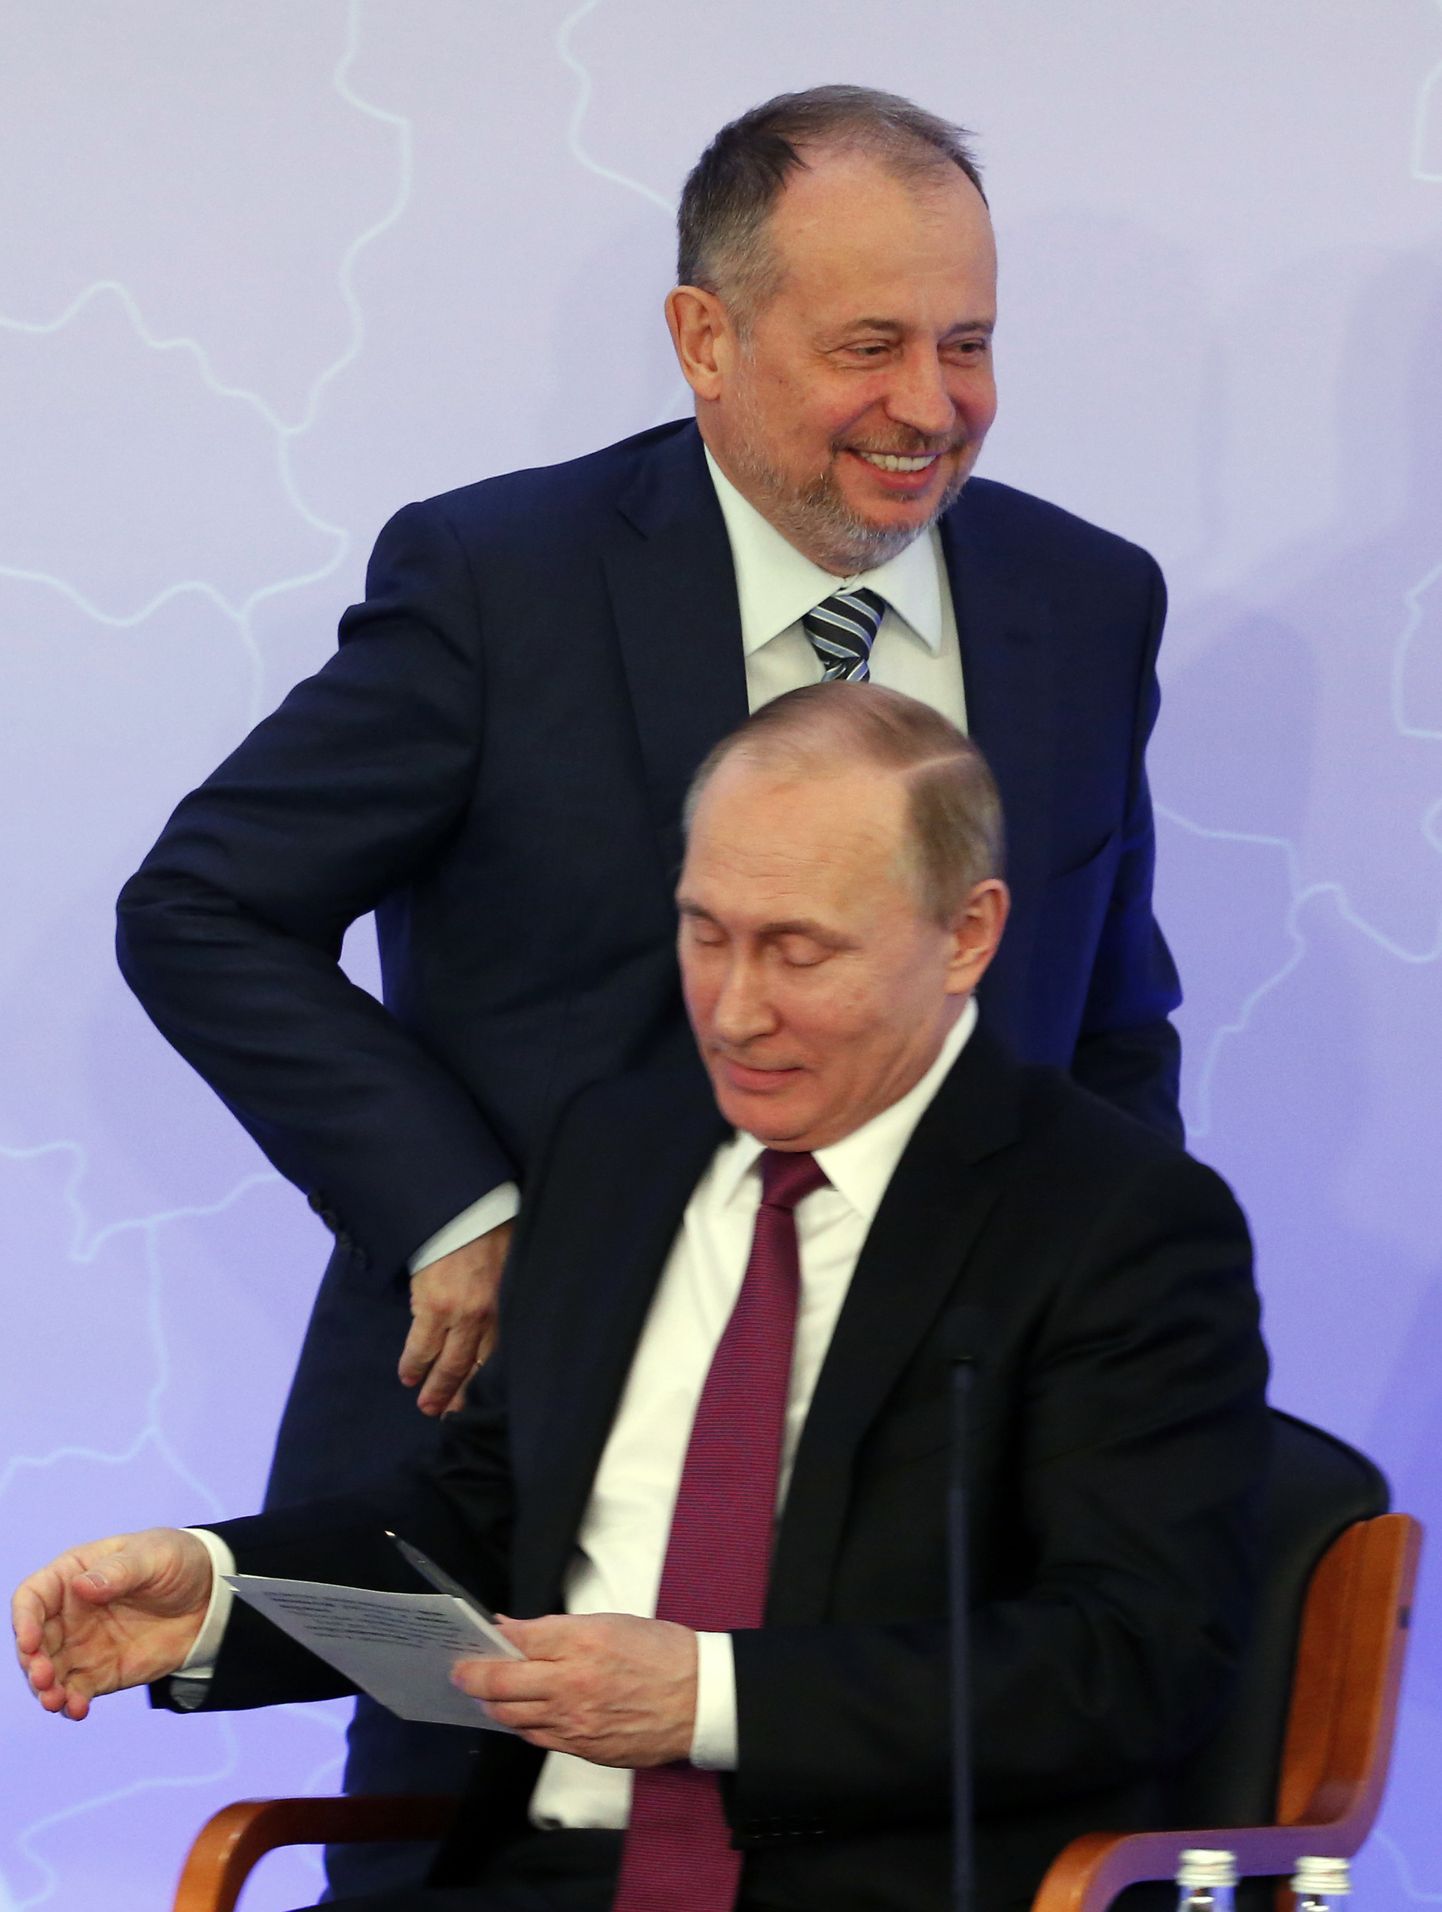 Venemaa üks rikkamaid oligarhe, terasemagnaat Vladimir Lisin koos Vladimir Putiniga.